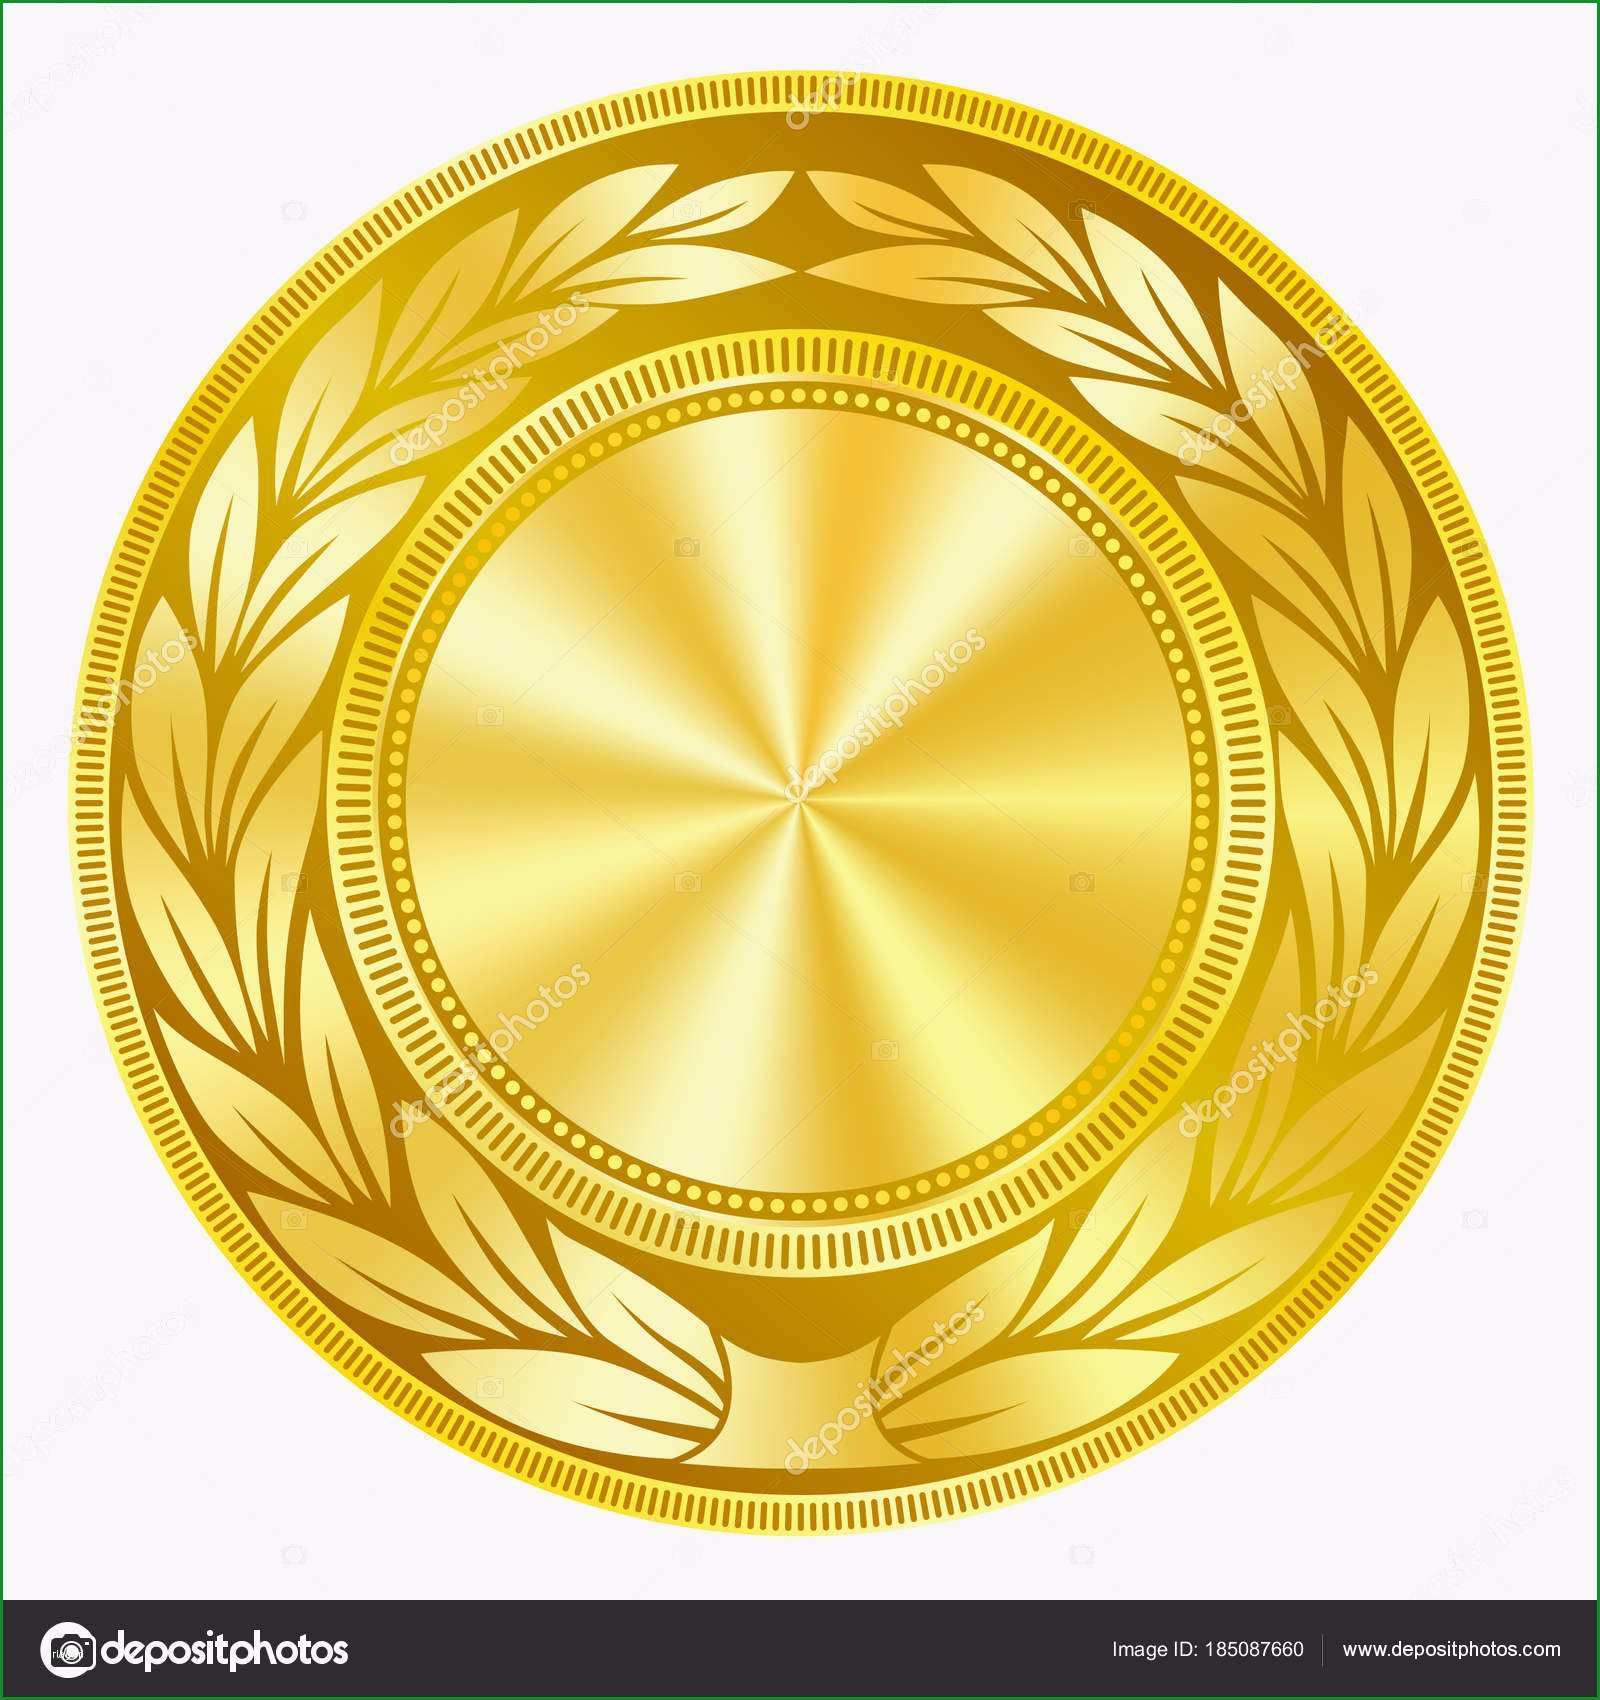 Ungewöhnlich Vergoldete Medaille Vorlage Mit Polierten Glanz Effekt